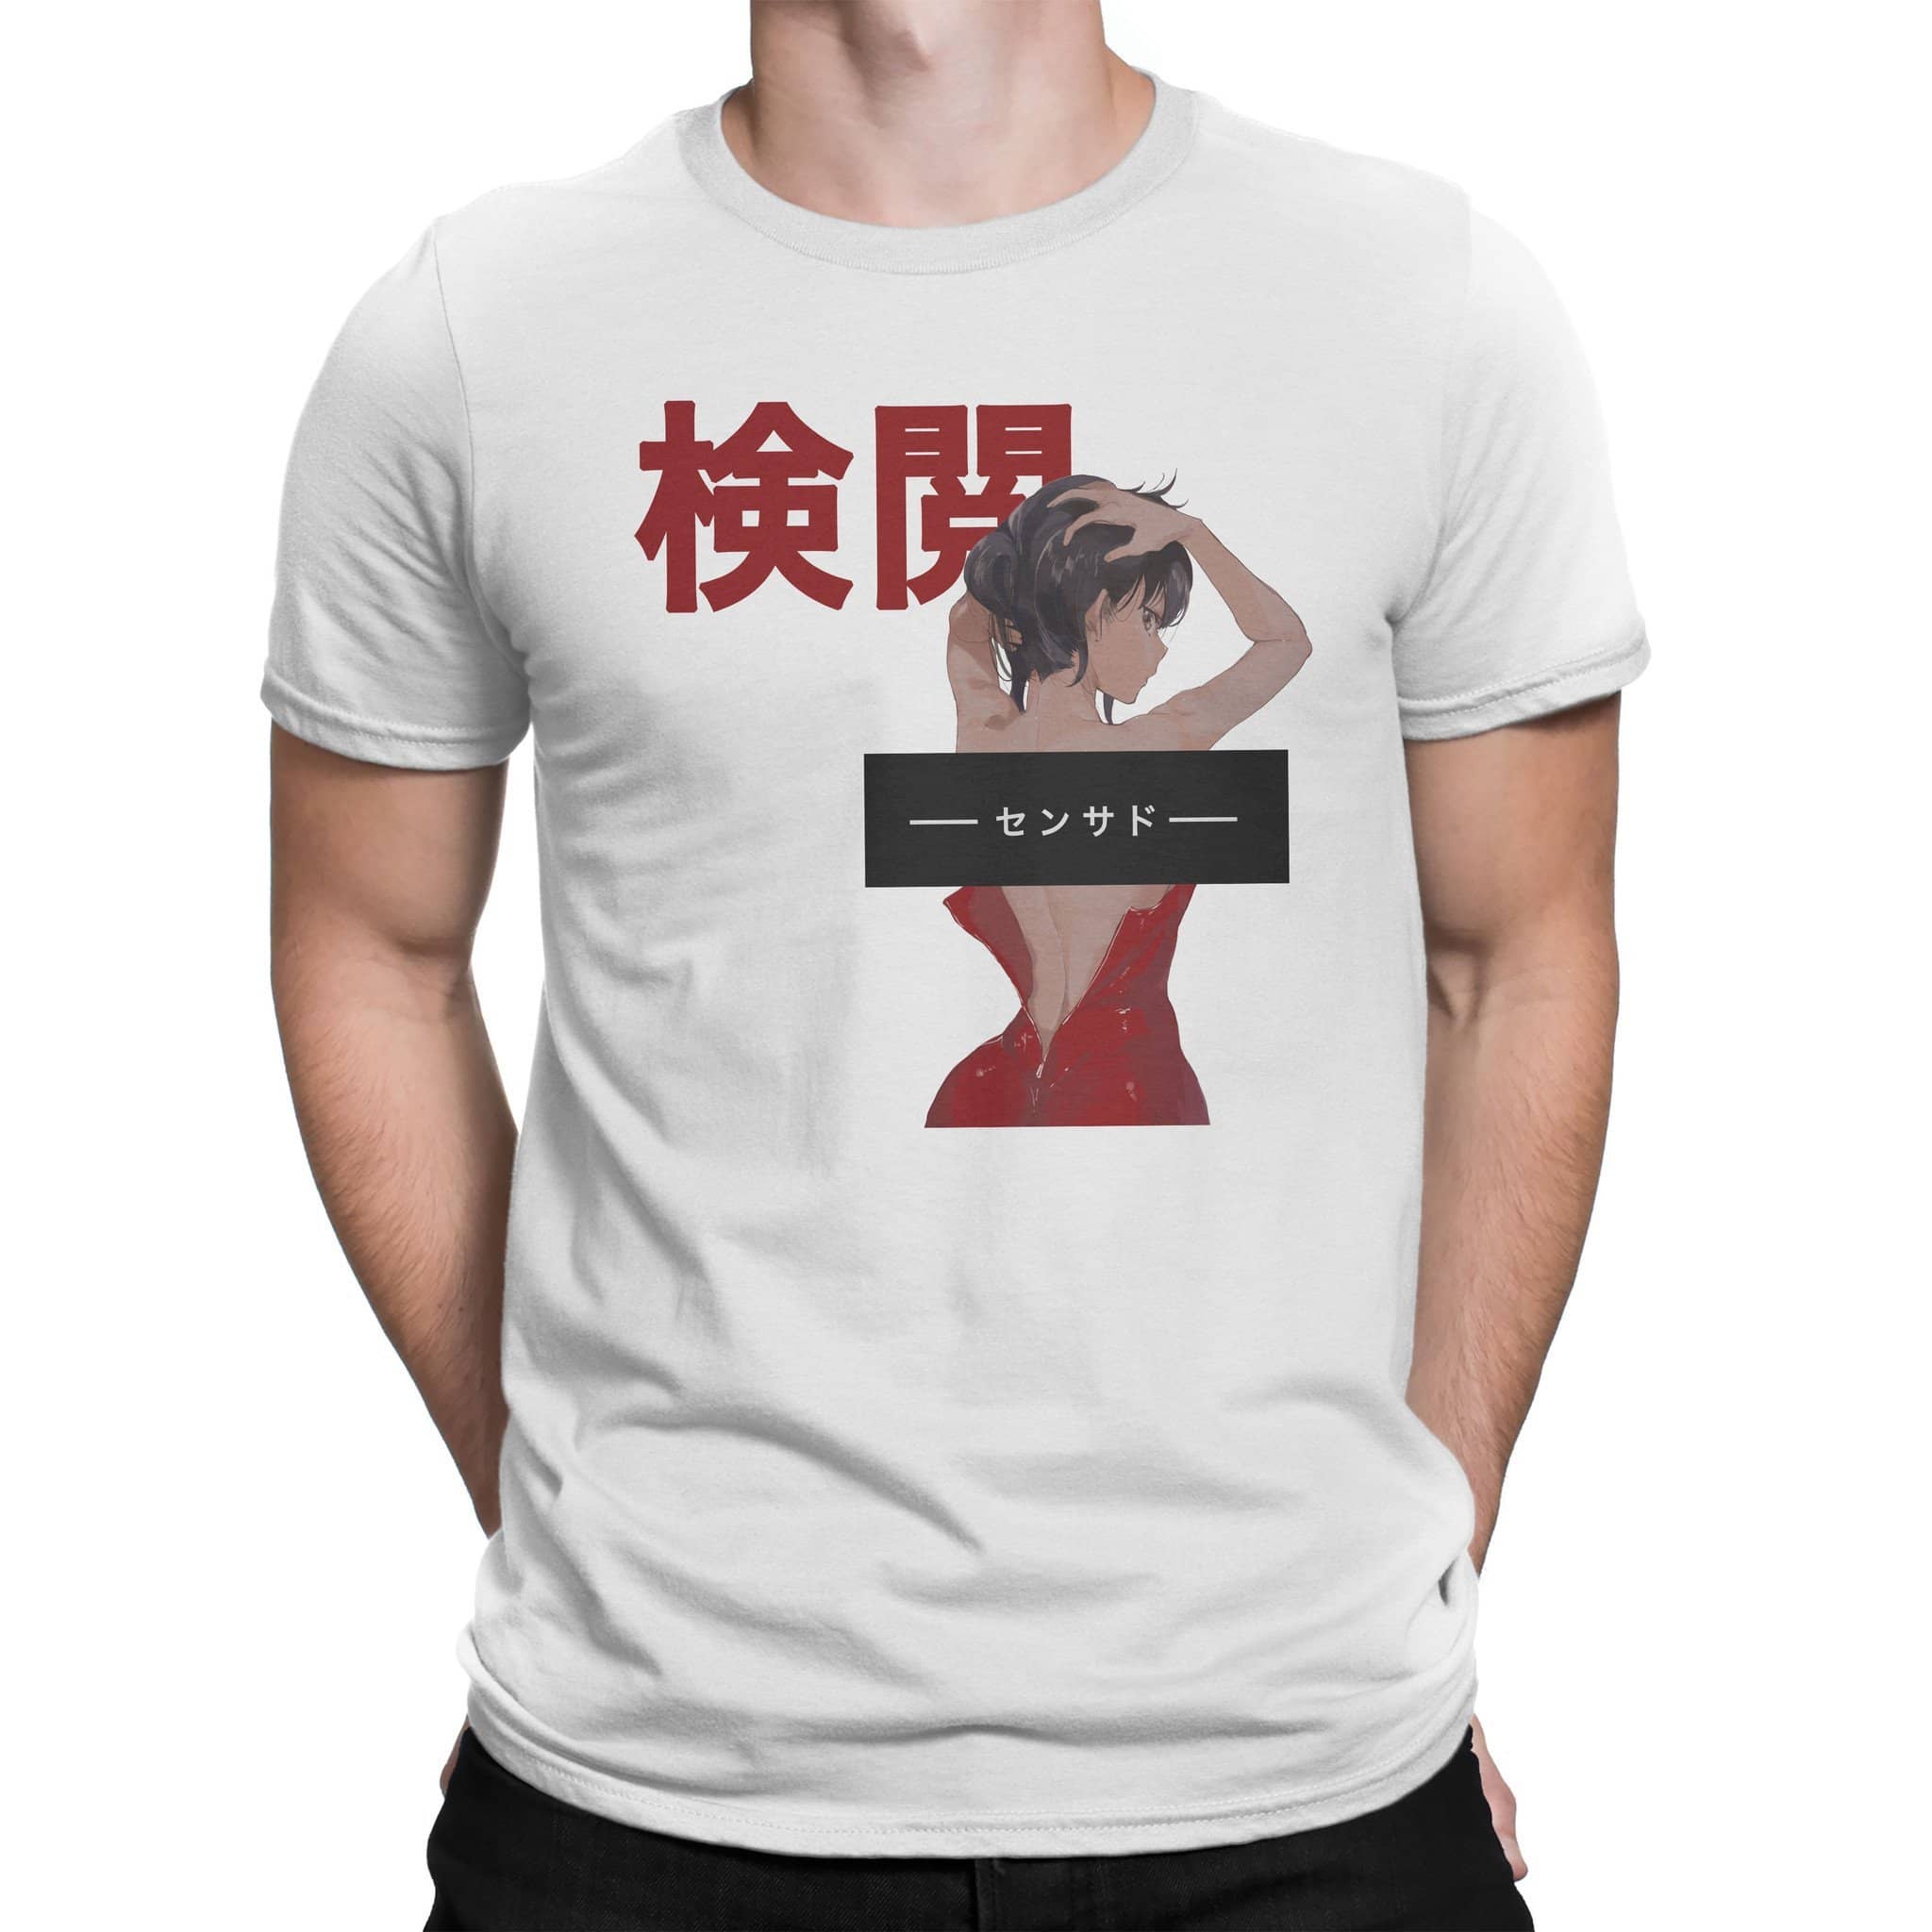 Hot Anime Girl T Shirt